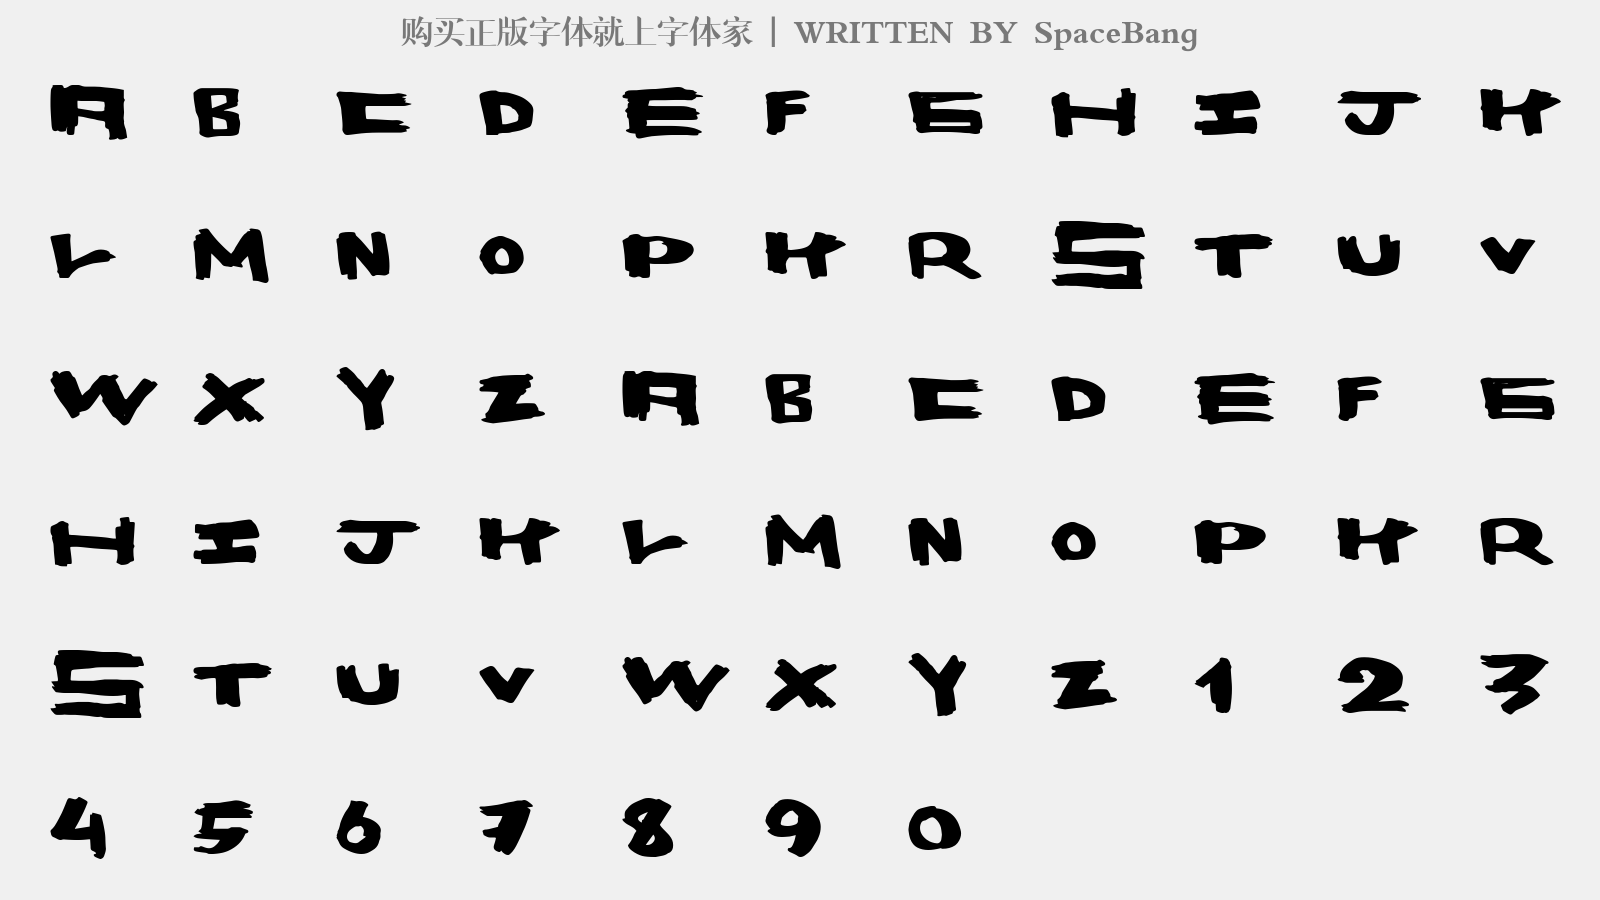 SpaceBang - 大写字母/小写字母/数字